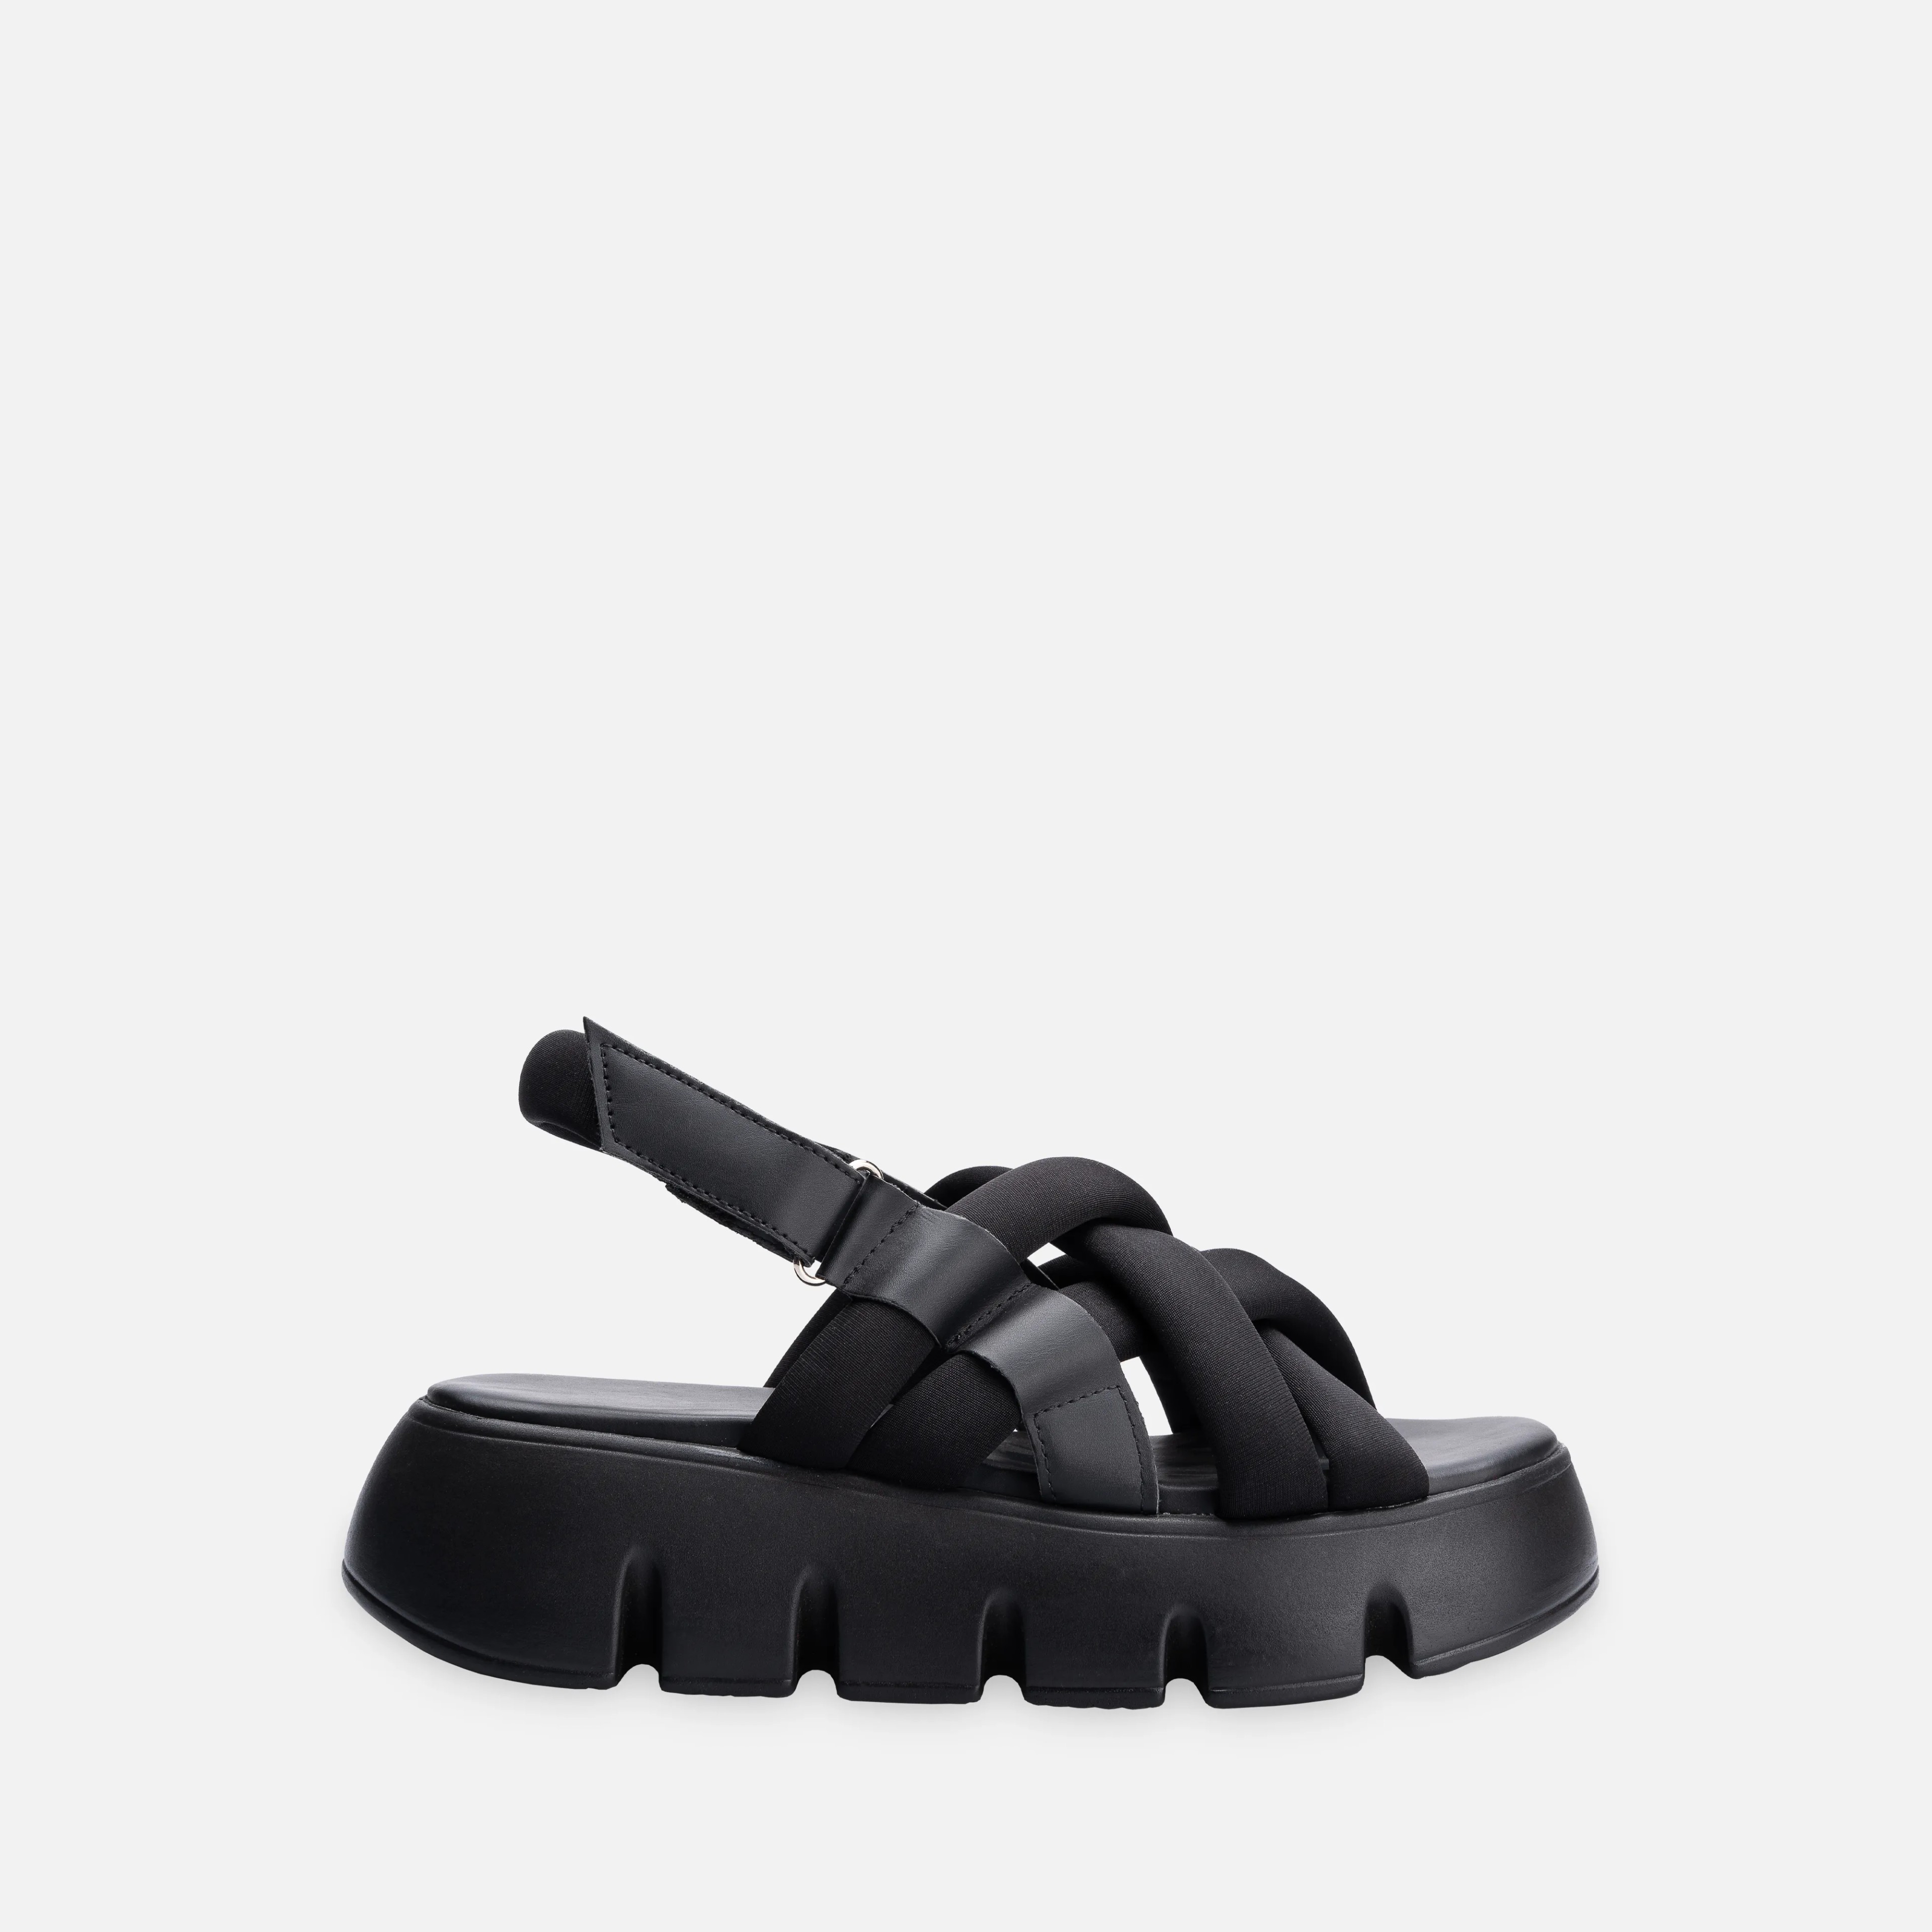 Dalgıç Kumaşlı Kalın Rahat Tabanlı Sandalet - Siyah